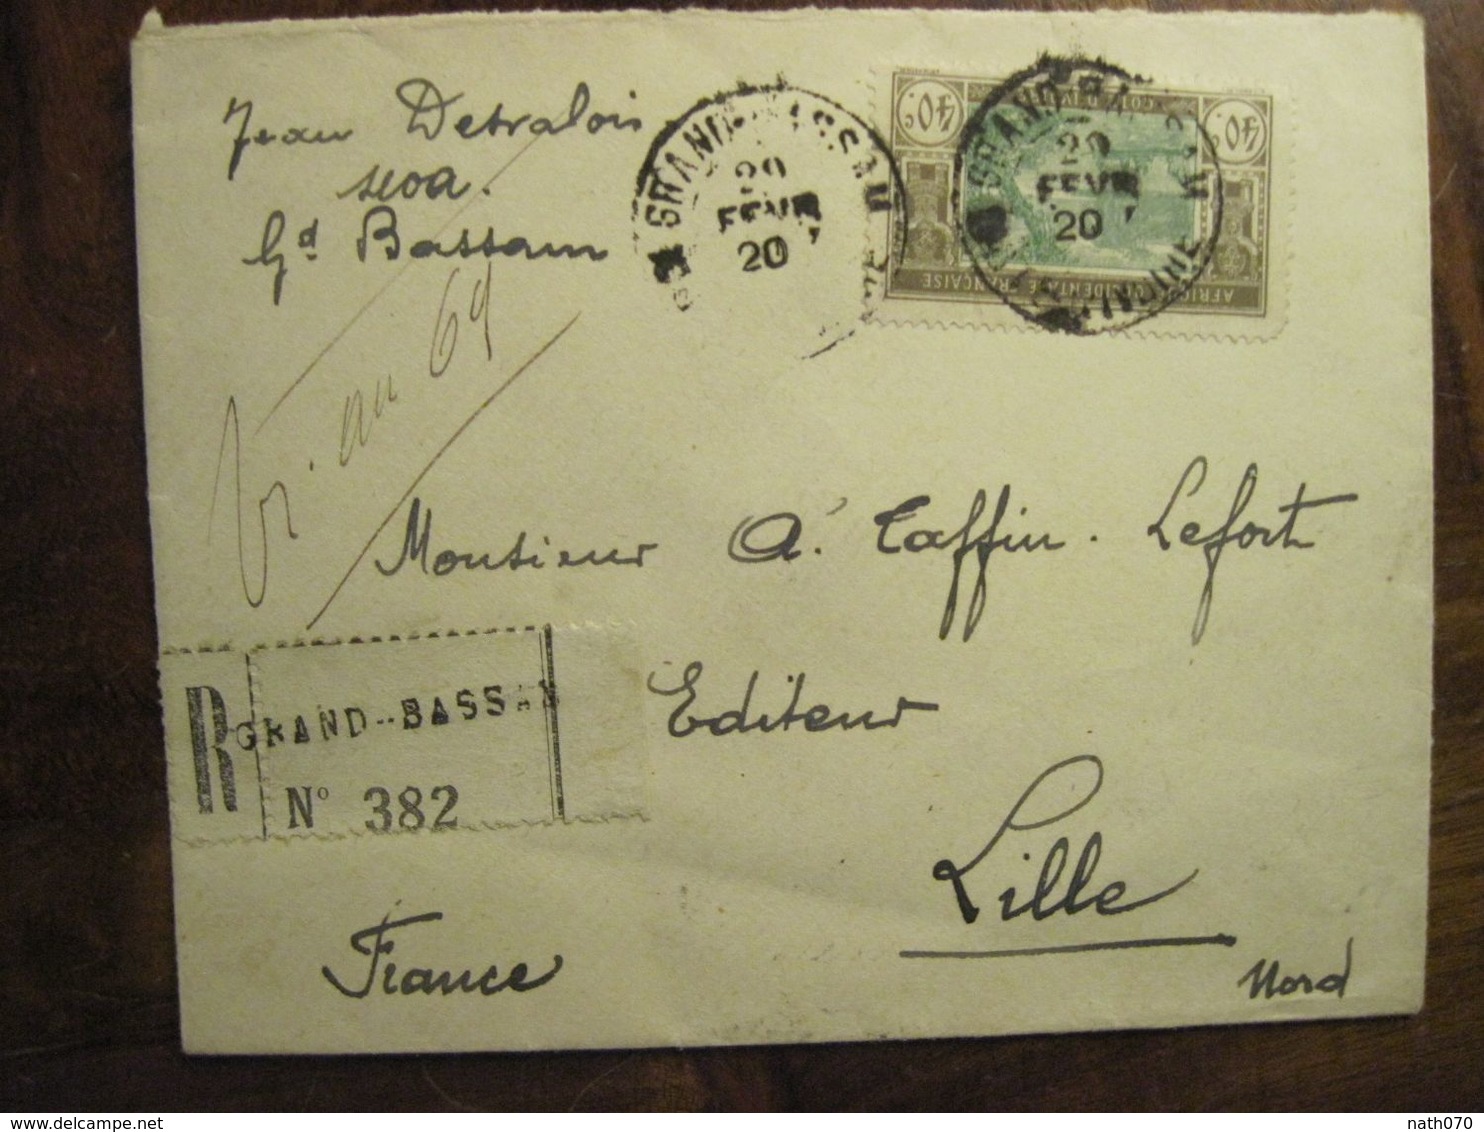 Cote D'Ivoire 1920 France Grand Bassam Lettre Enveloppe Cover Colonie Recommandé Reco AOF Taffin Lefort - Briefe U. Dokumente